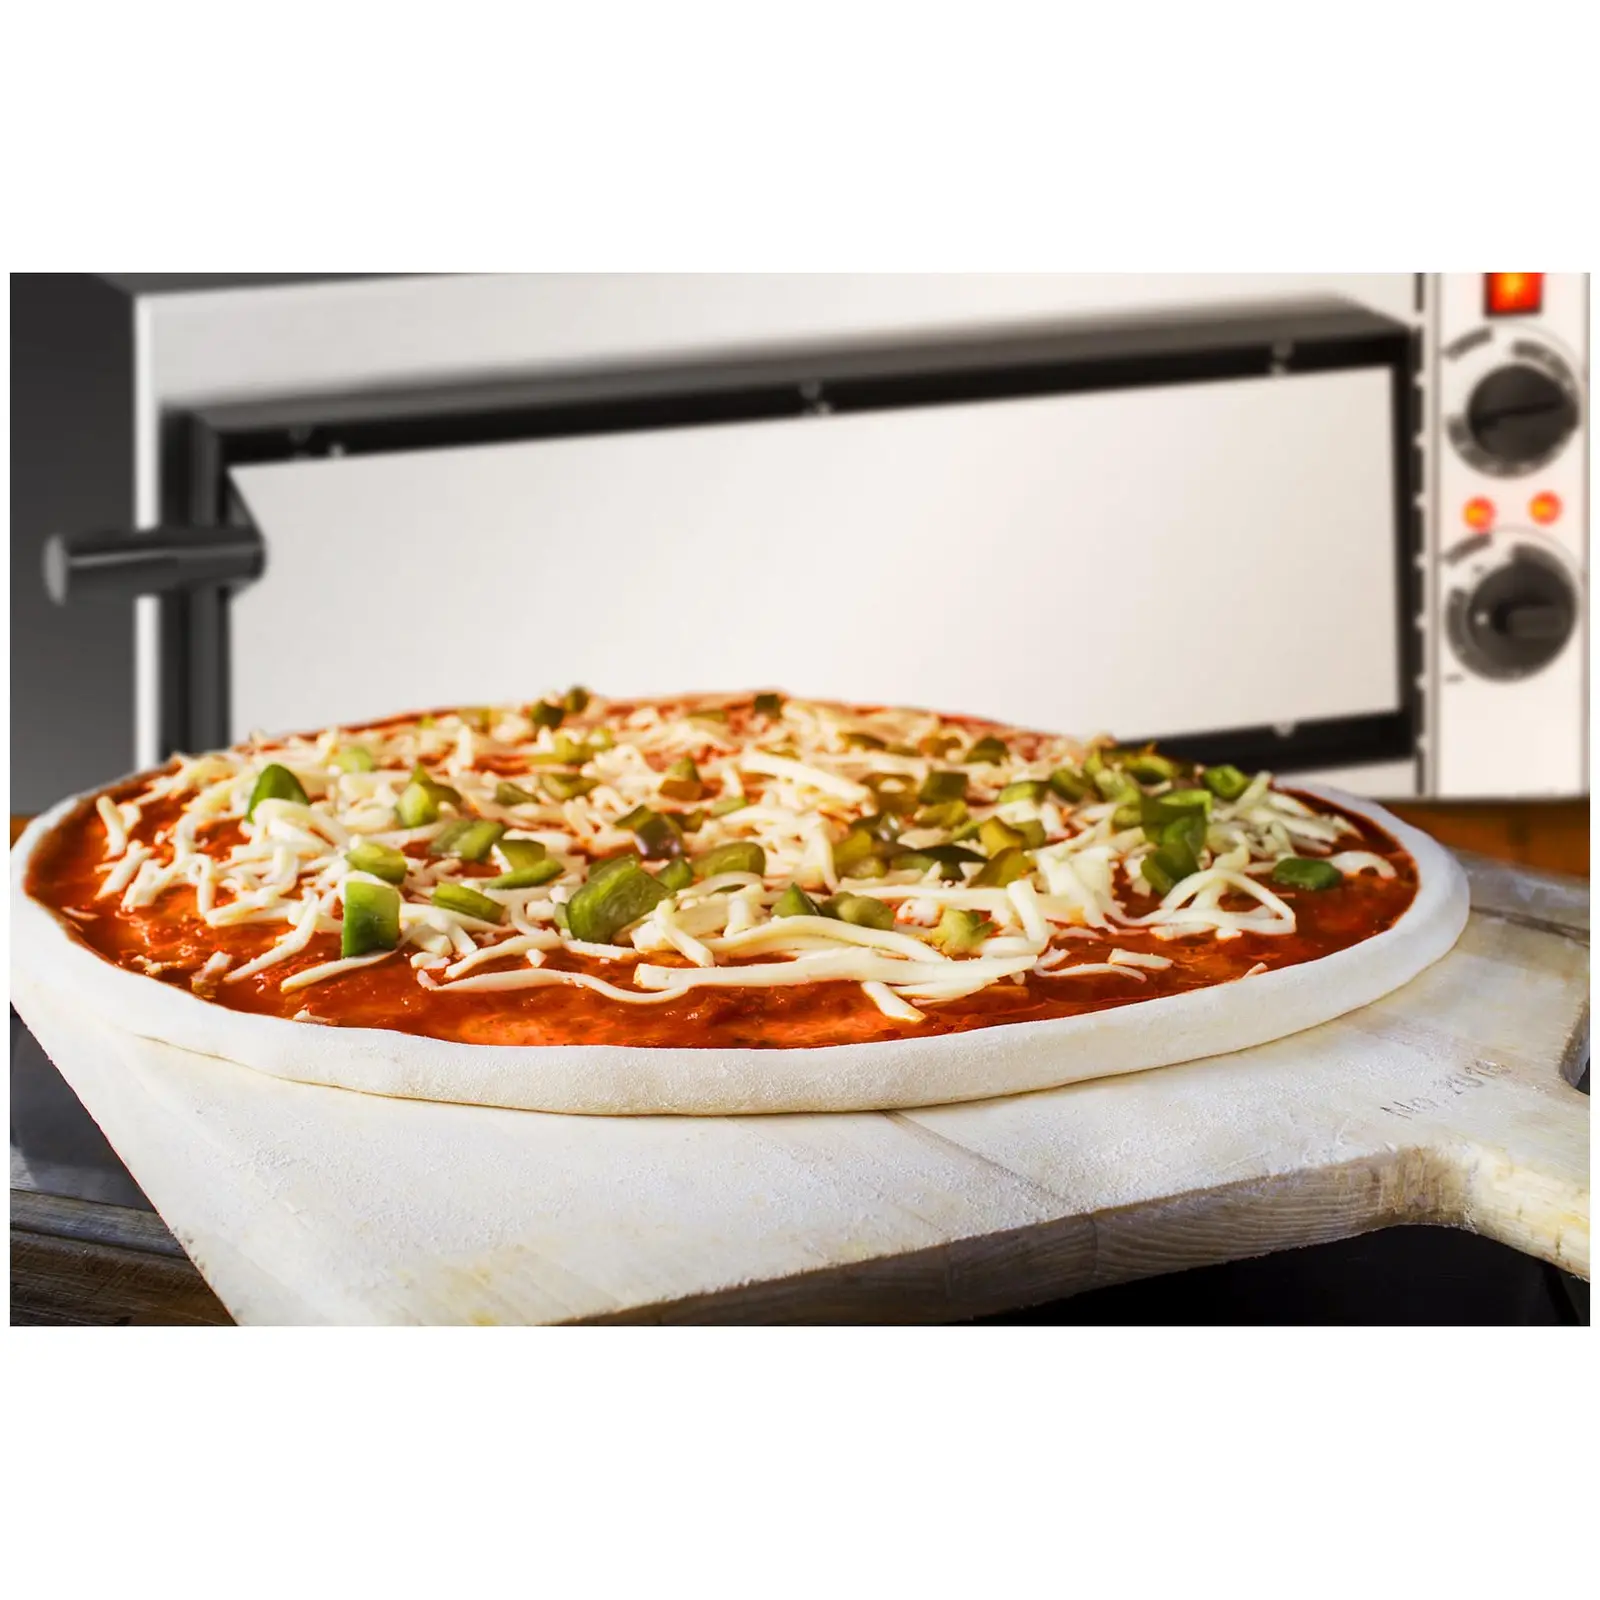 Forno elettrico per pizza professionale - 1 camera - Ø 32 cm